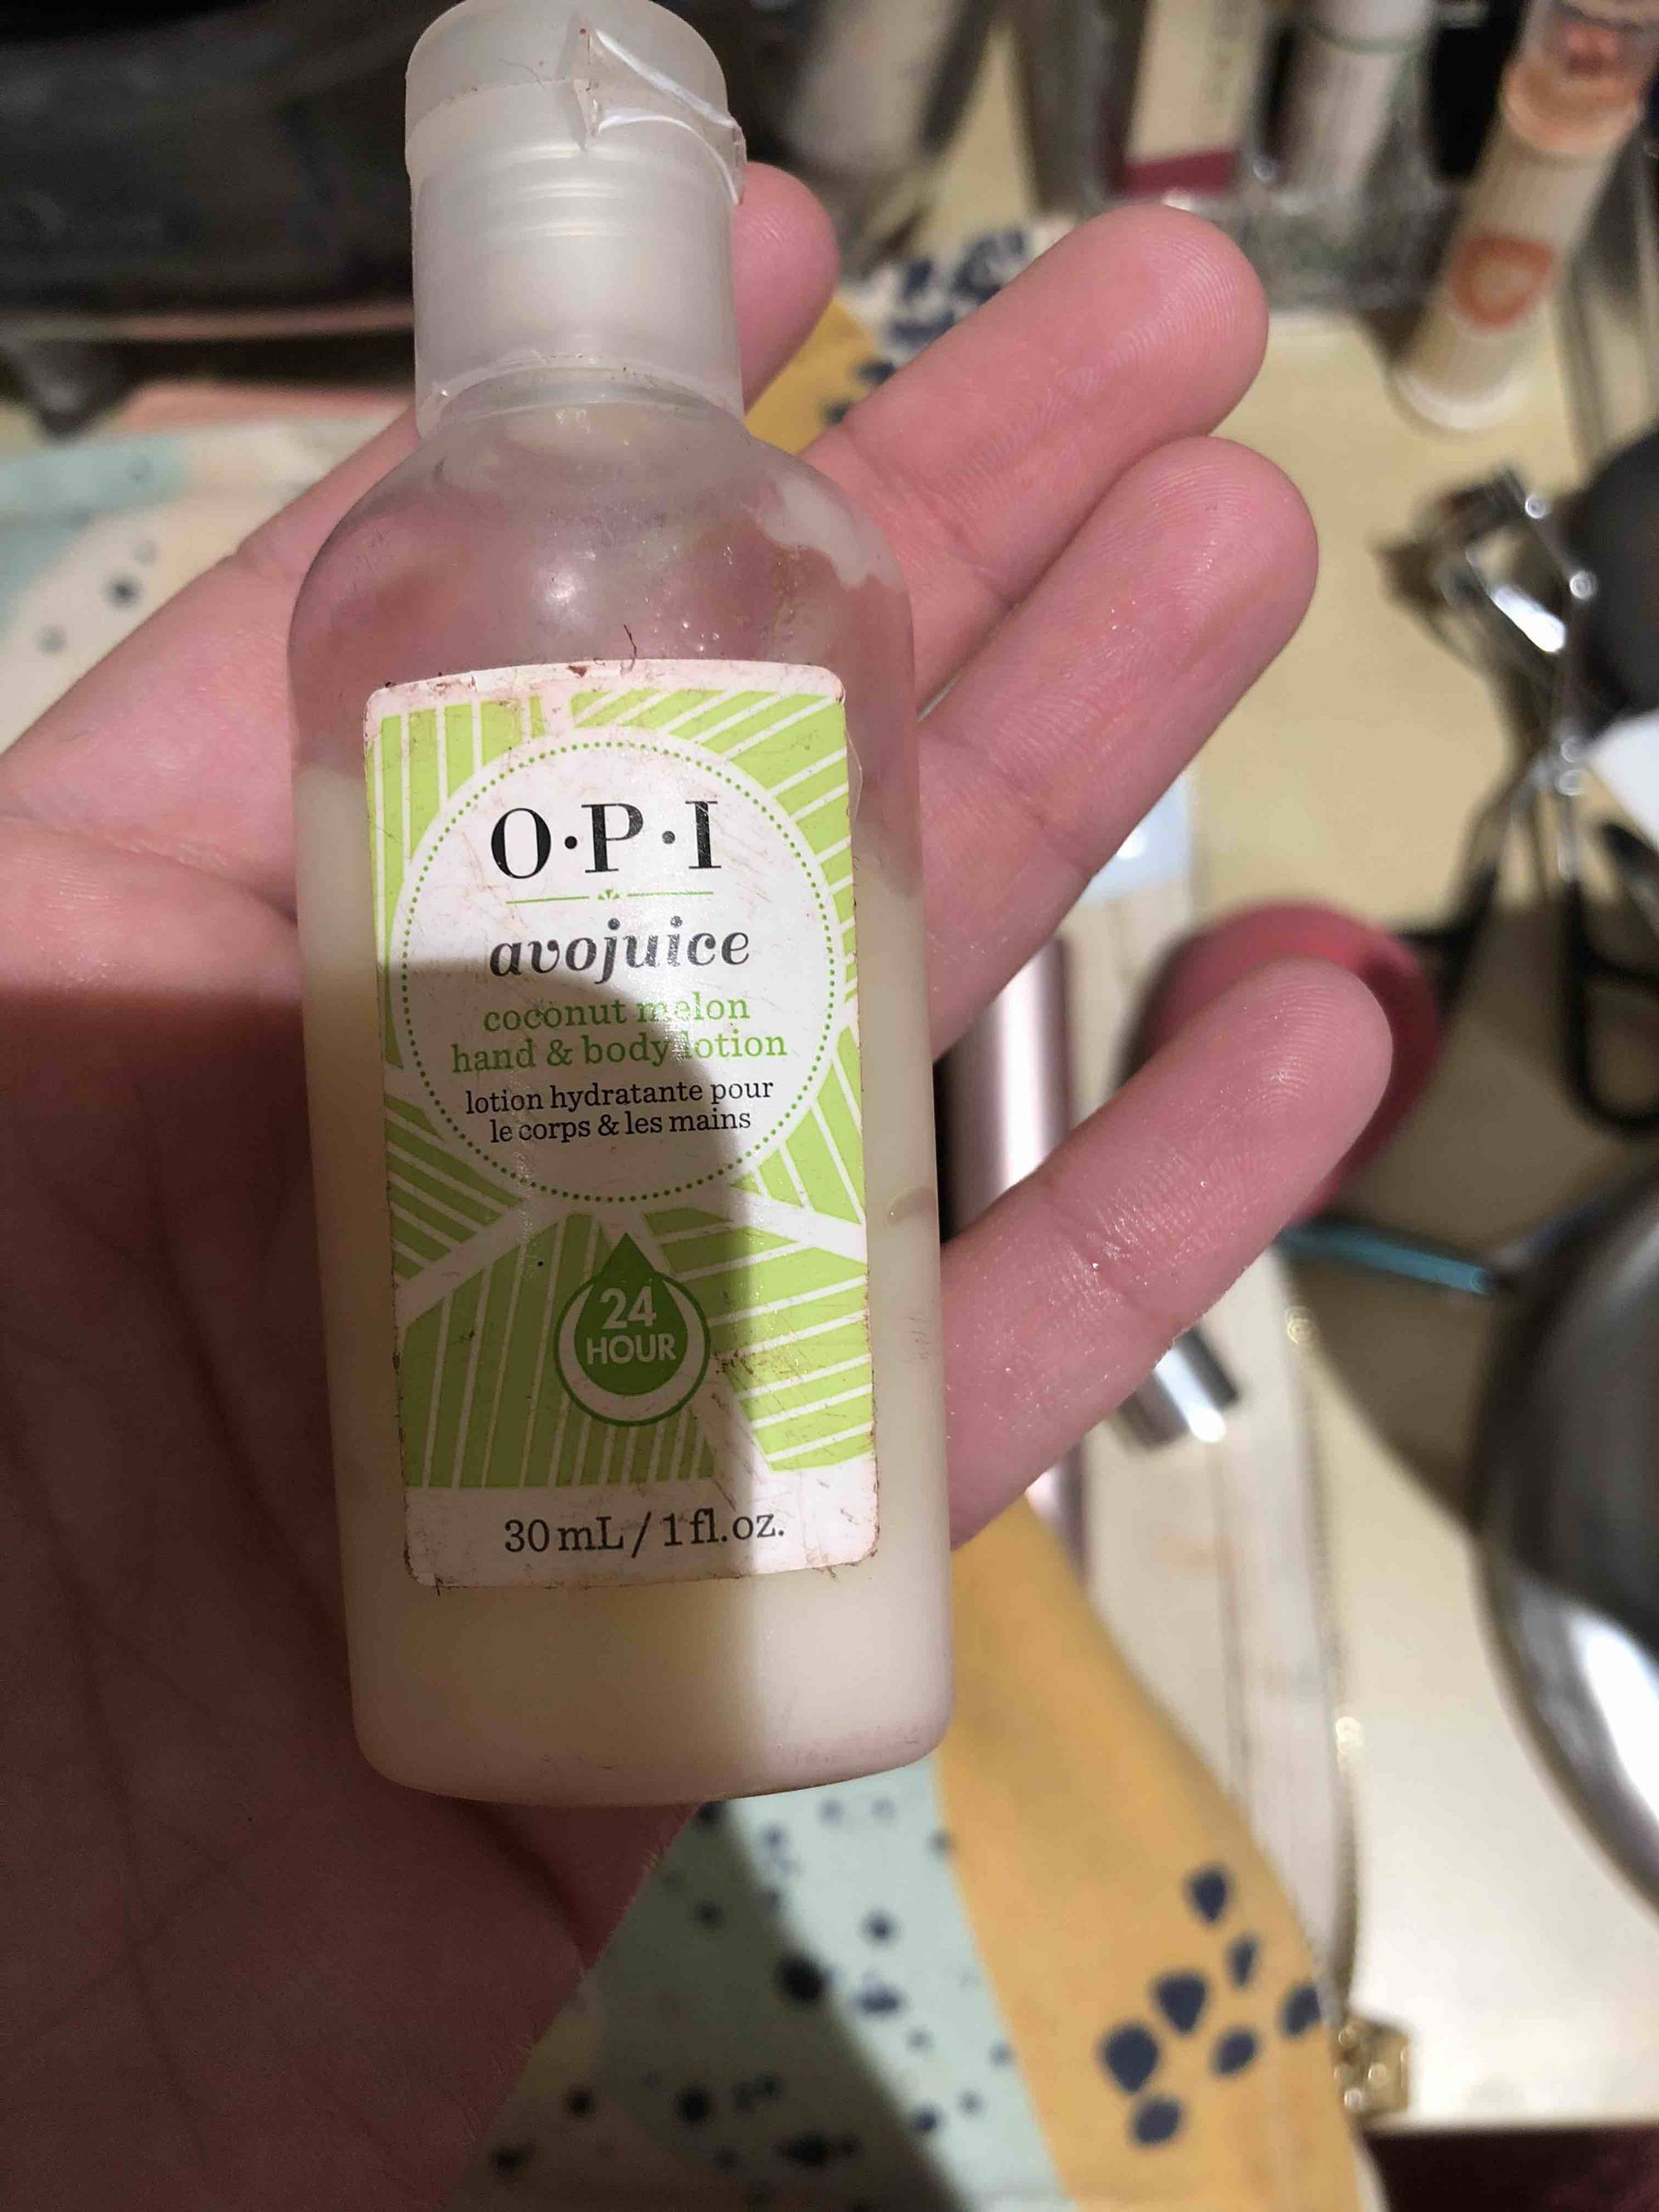 O.P.I - Avojuice - Coconut melon hand & body lotion